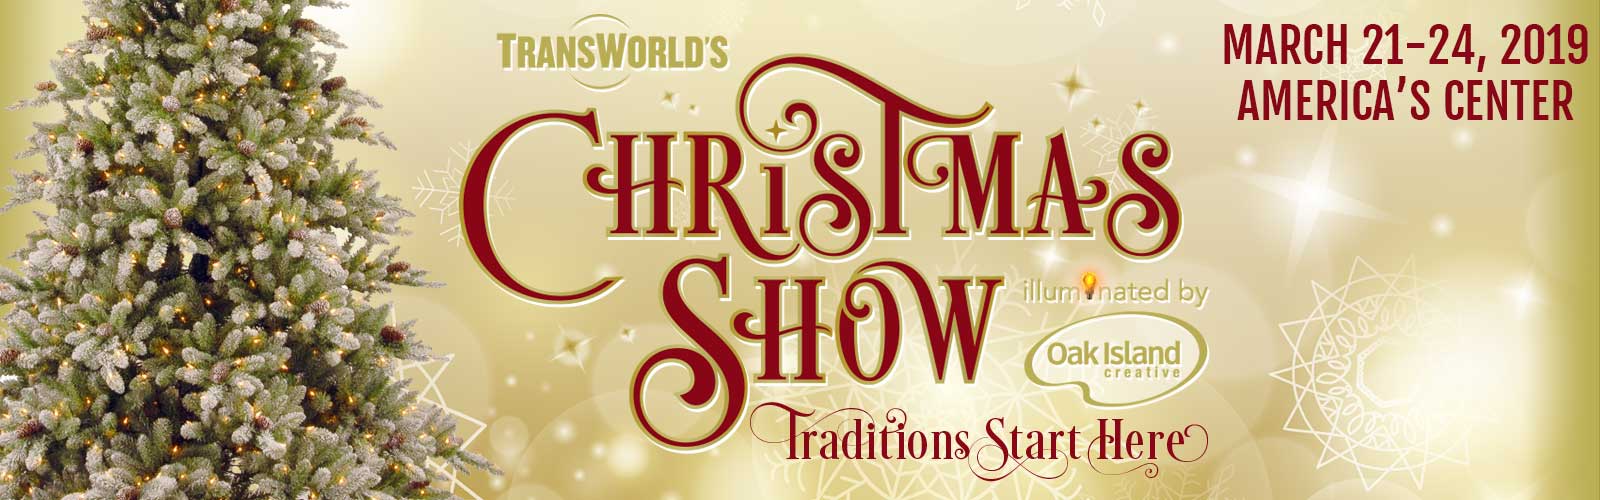 TransWorld's Christmas Show